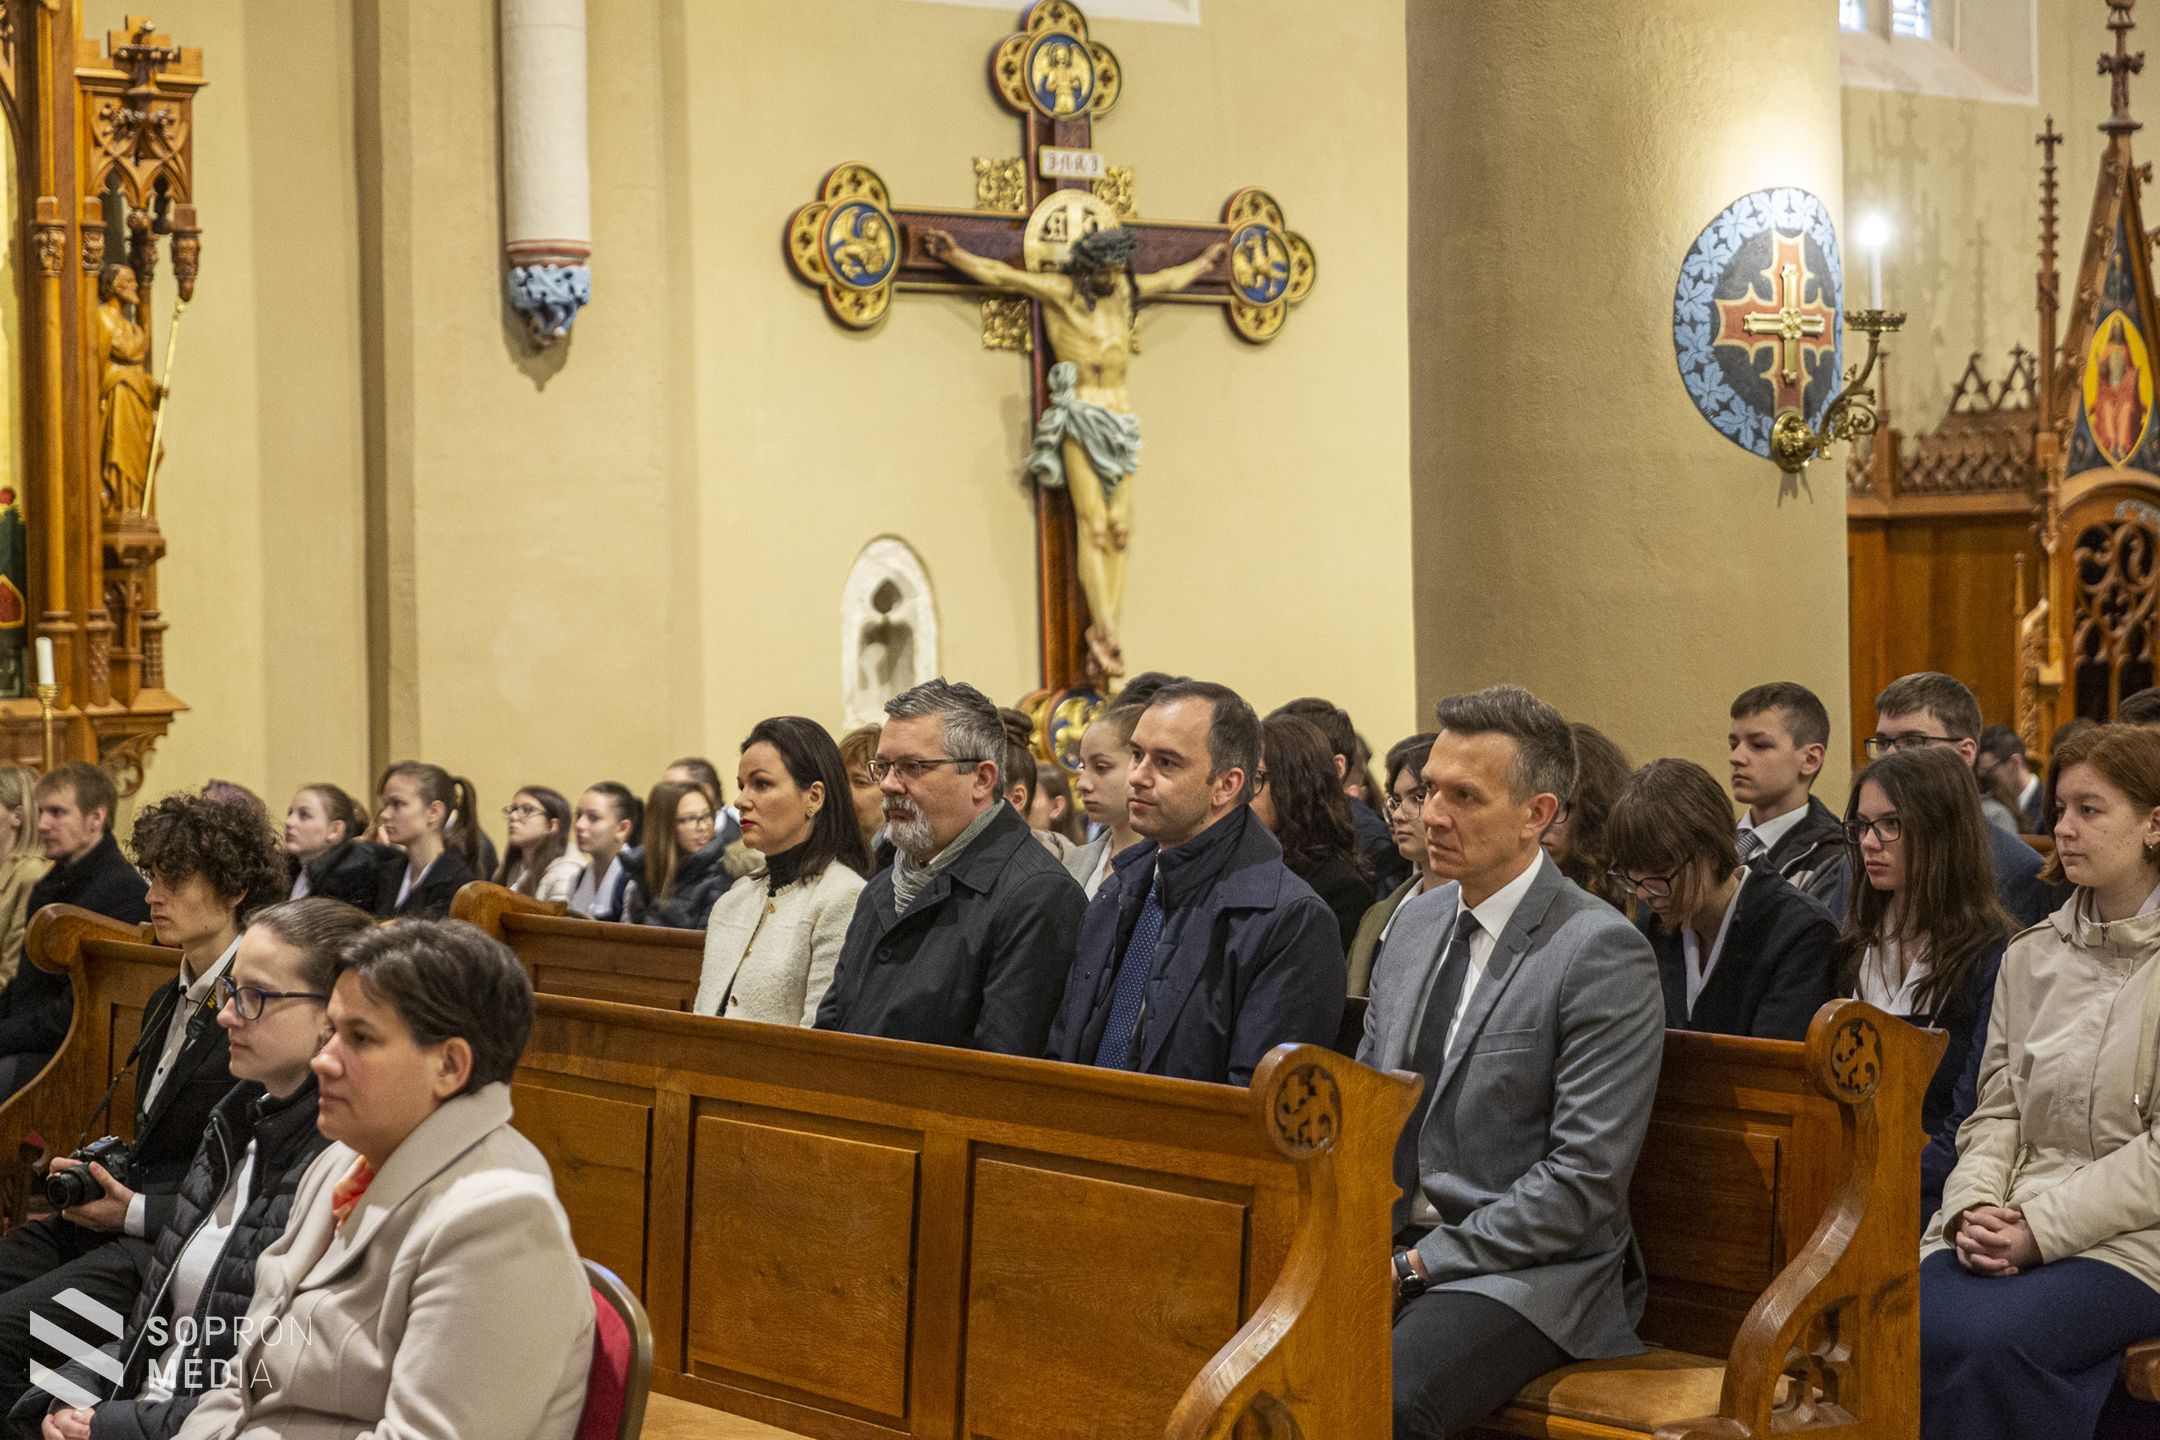 Fennállásának 275. jubileumát ünnepelte az Orsolya-iskola